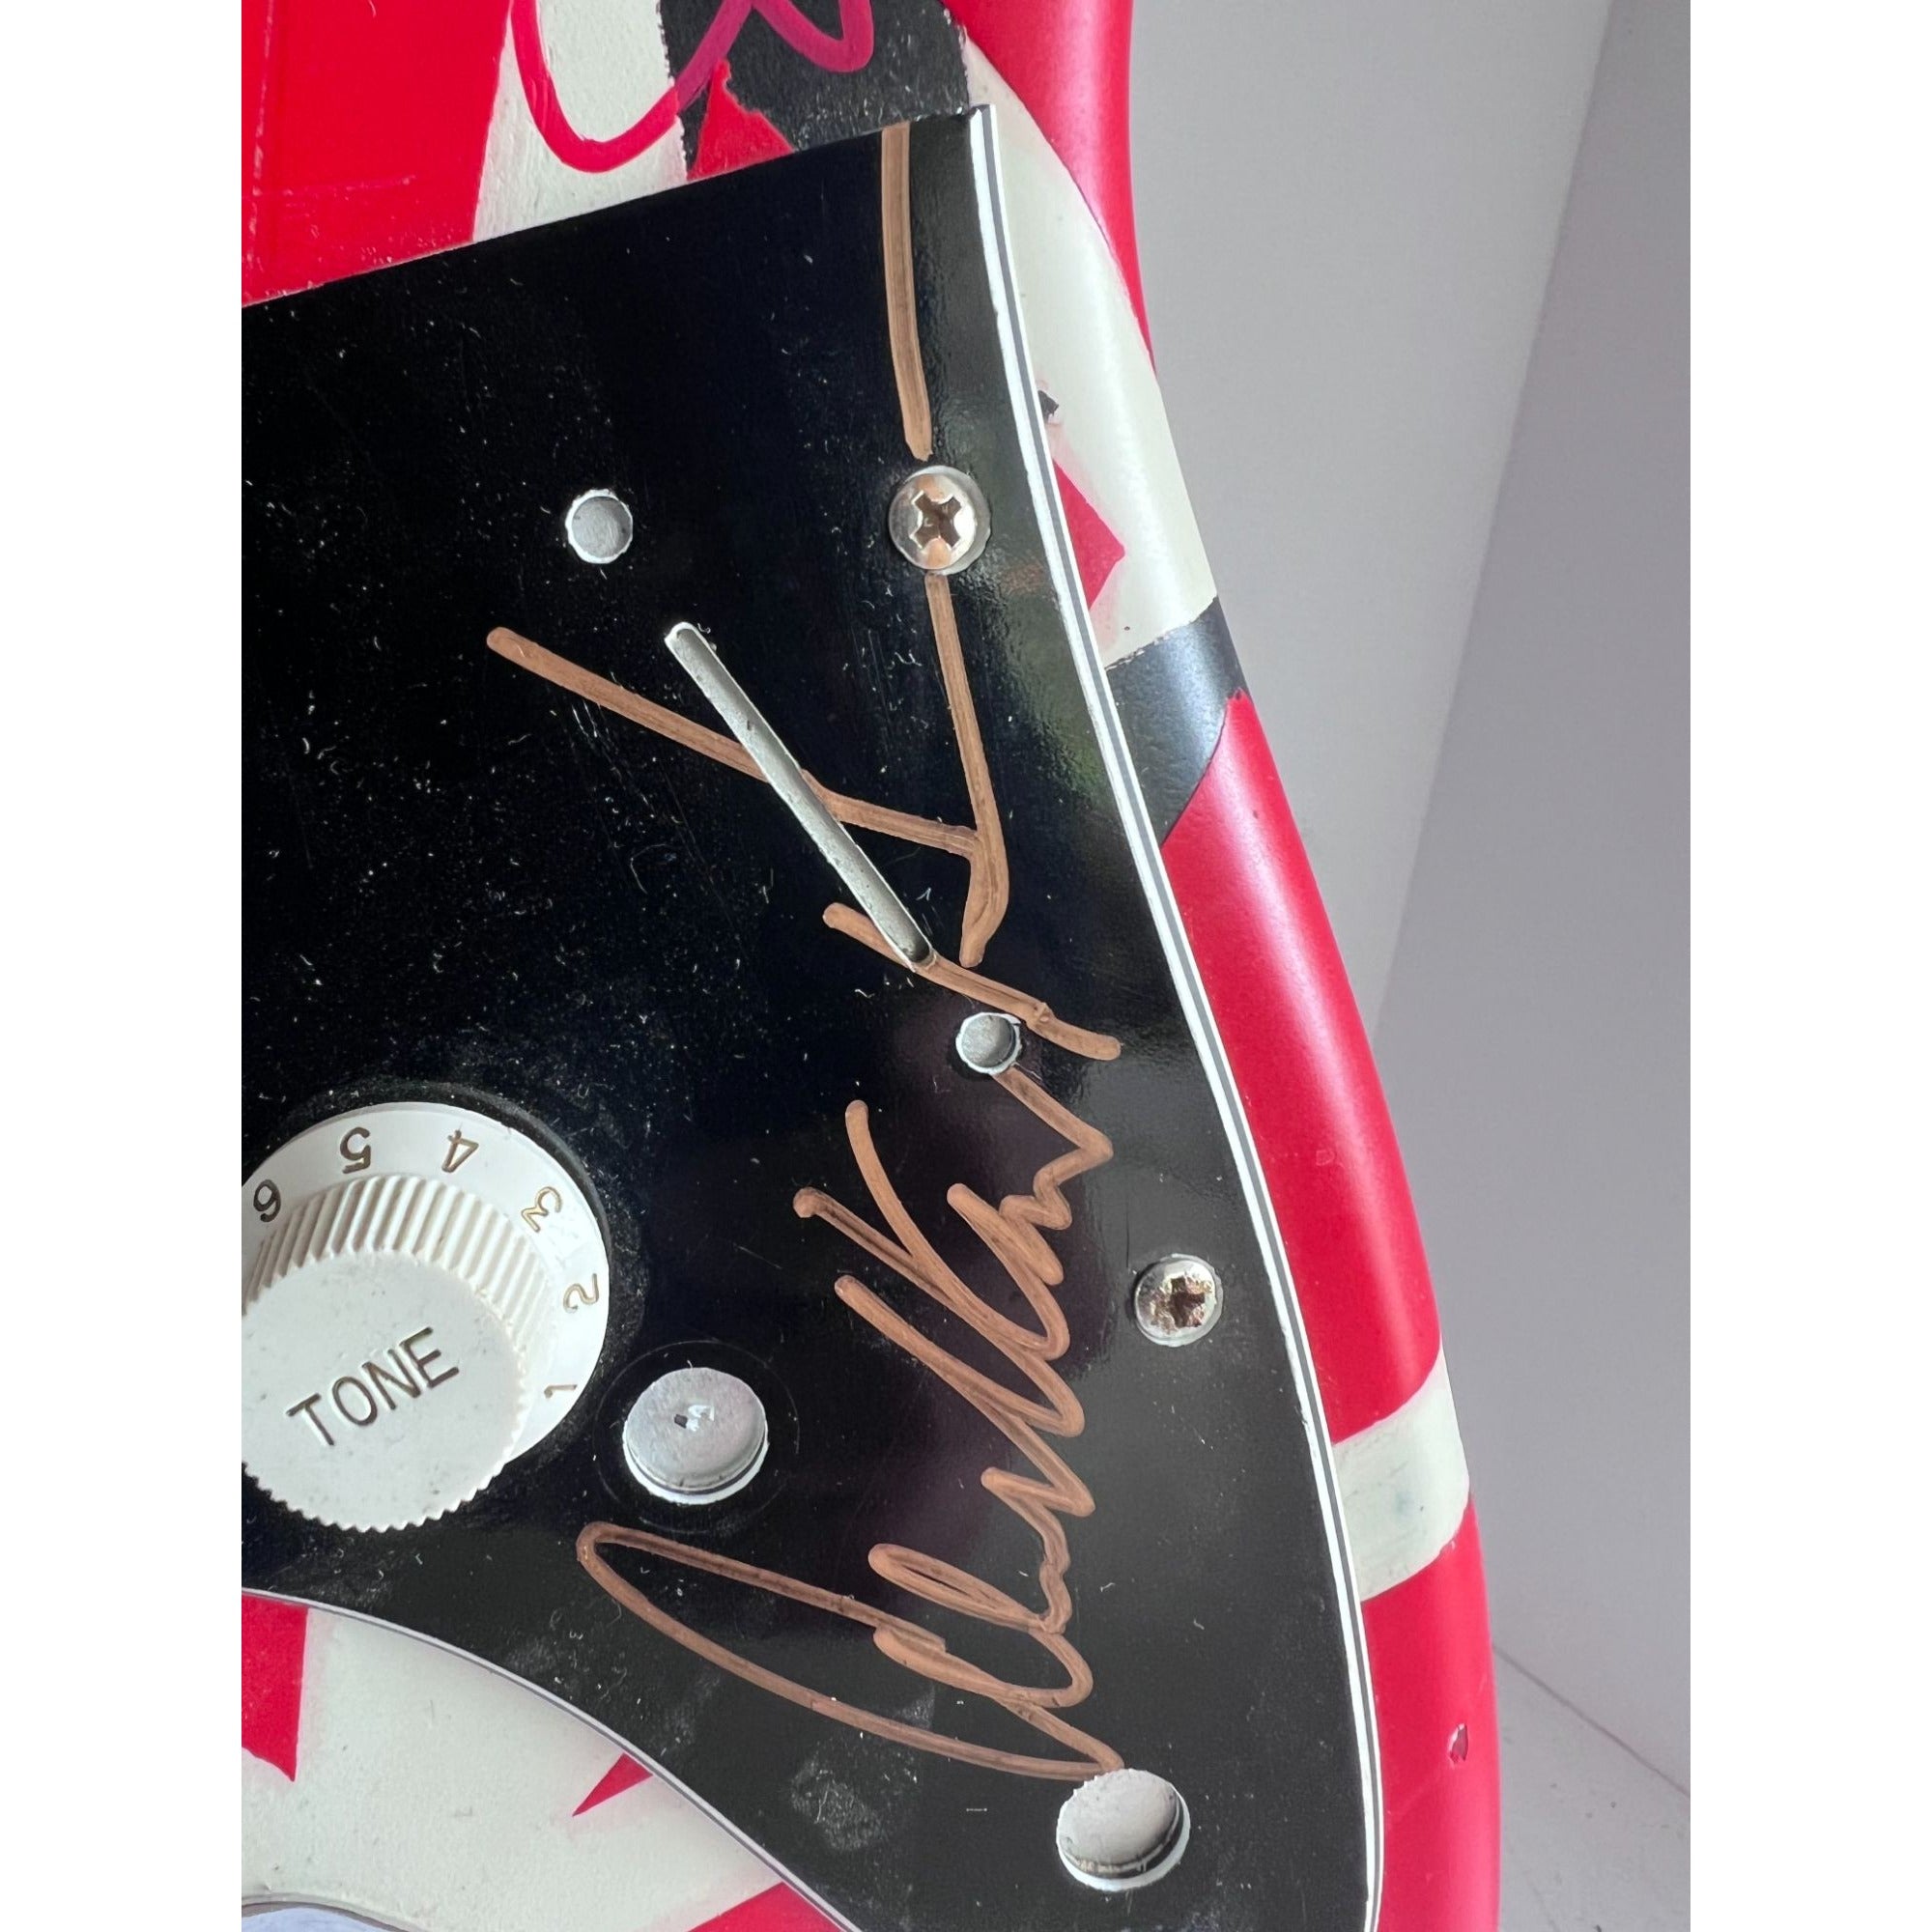 Eddie Van Halen Frankenstein Fender Stratocaster electric guitar signed by David Lee Roth Eddie Van Halen Michael Anthony Sammy Hagar